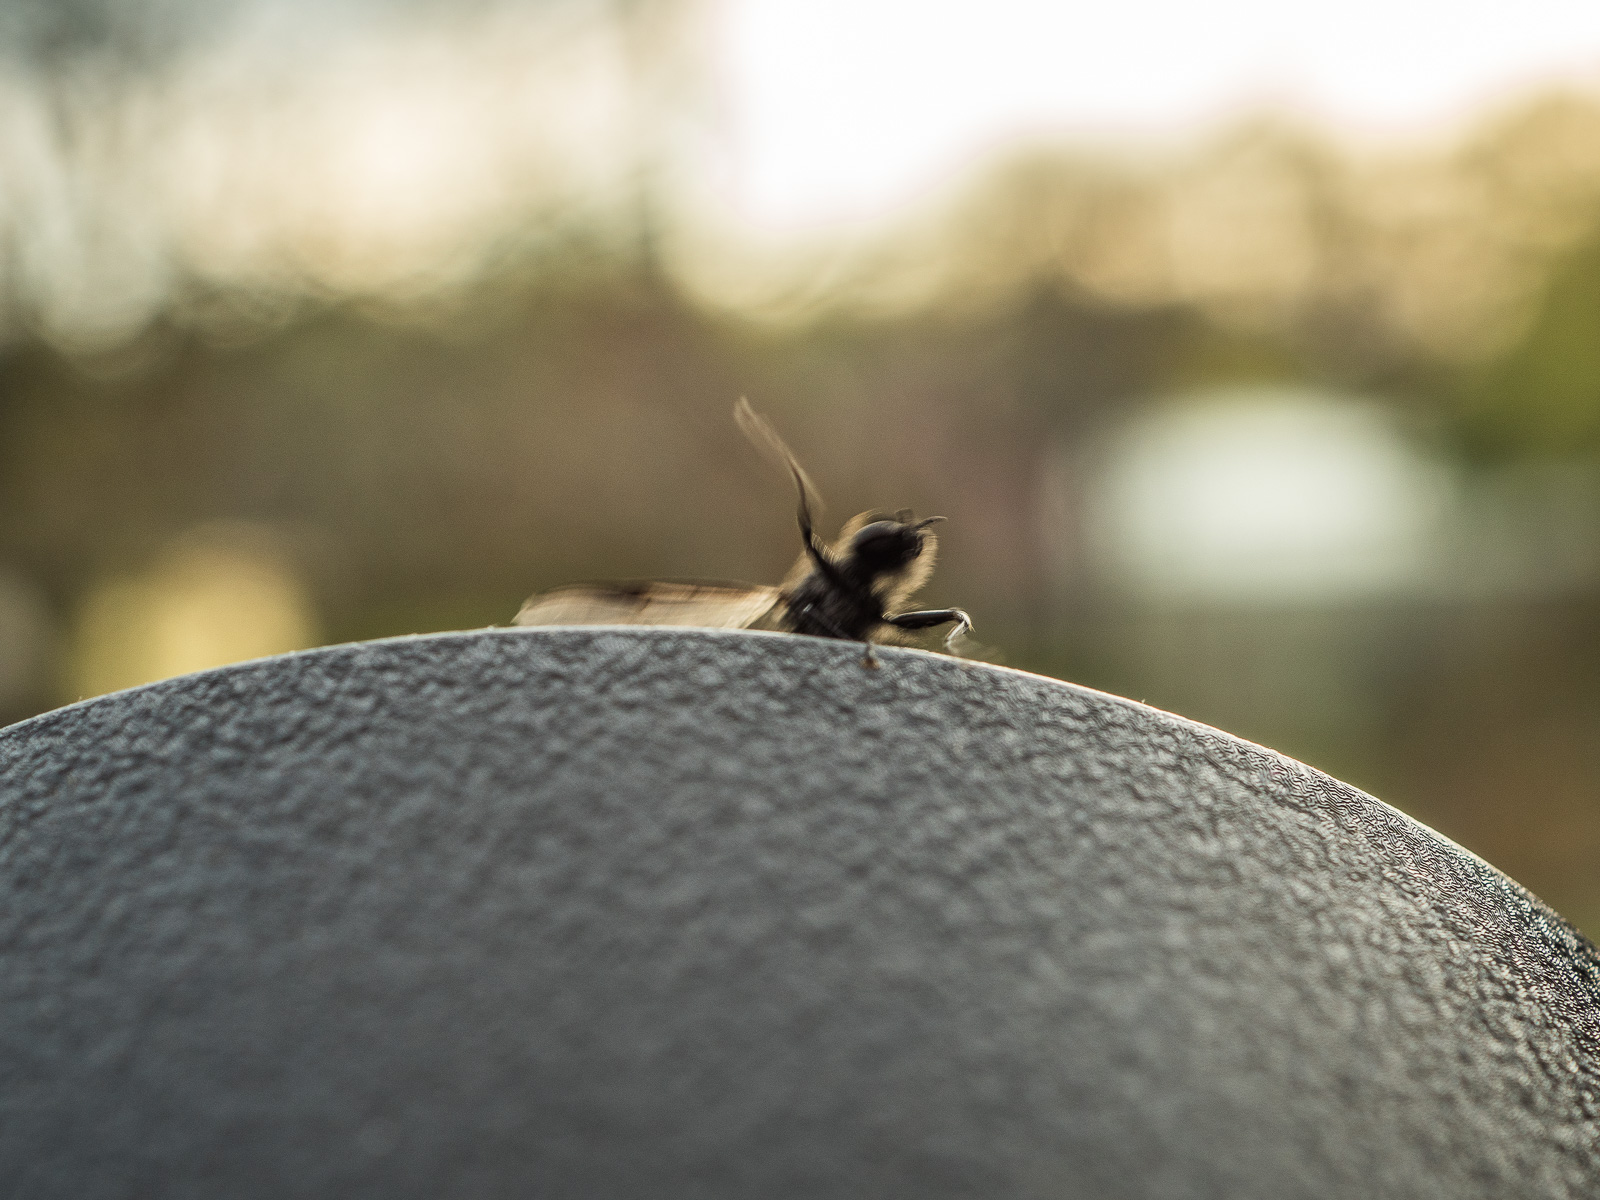 Eine schwarze Fliege oder ähnliches Insekt krabbelt vor dem Hintergrund untergehender Sonne von unten auf einen schwarzen Untergrund. Eins der Beine ist erhoben, der Flügel ausgebreitet